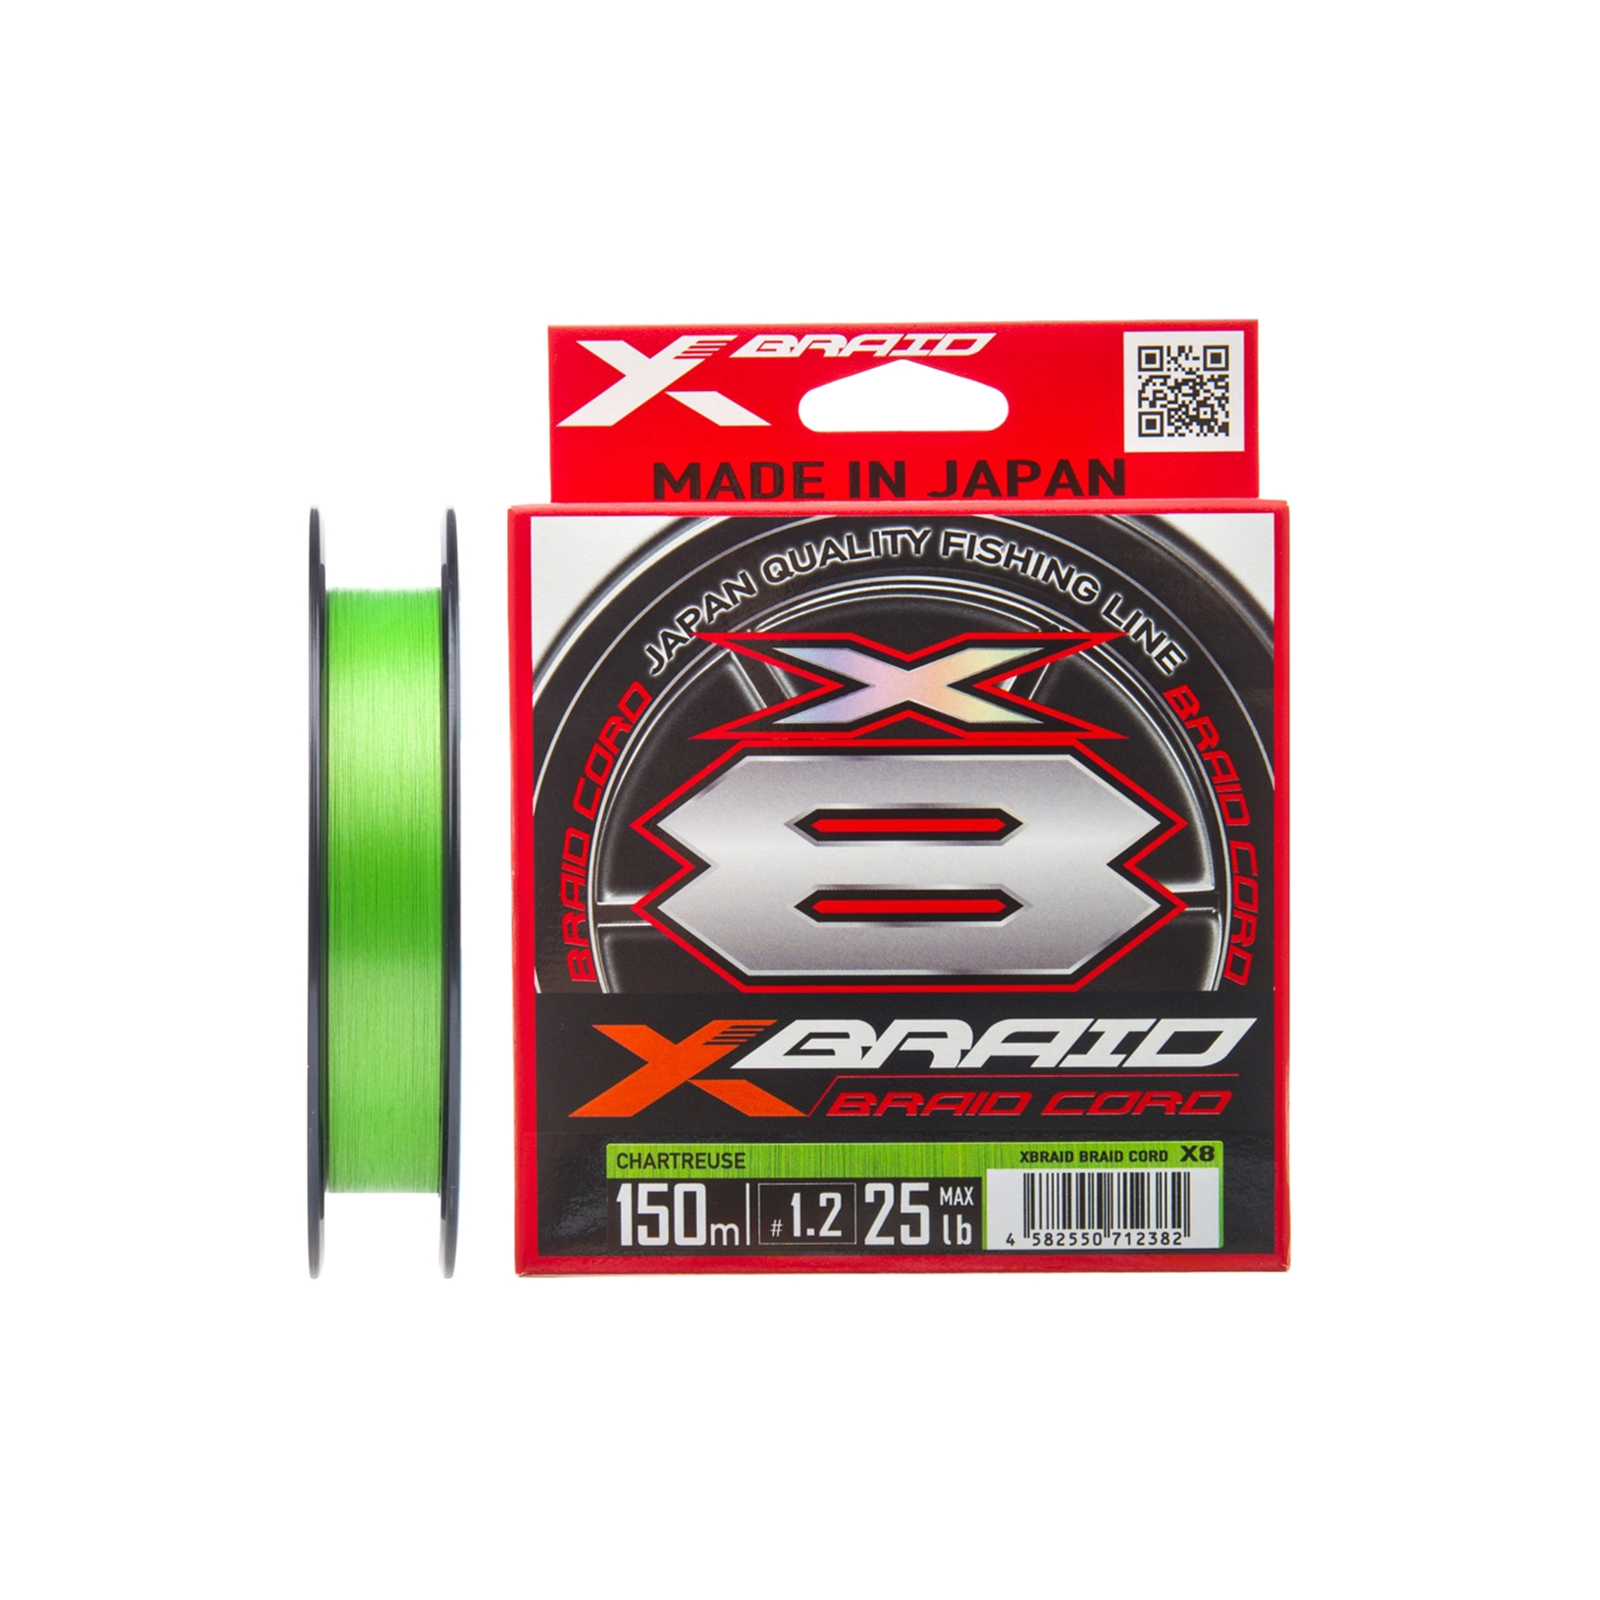 Шнур YGK X-Braid Braid Cord X8 150m 1.5/0.205mm 30lb/13.5kg (5545.03.07)